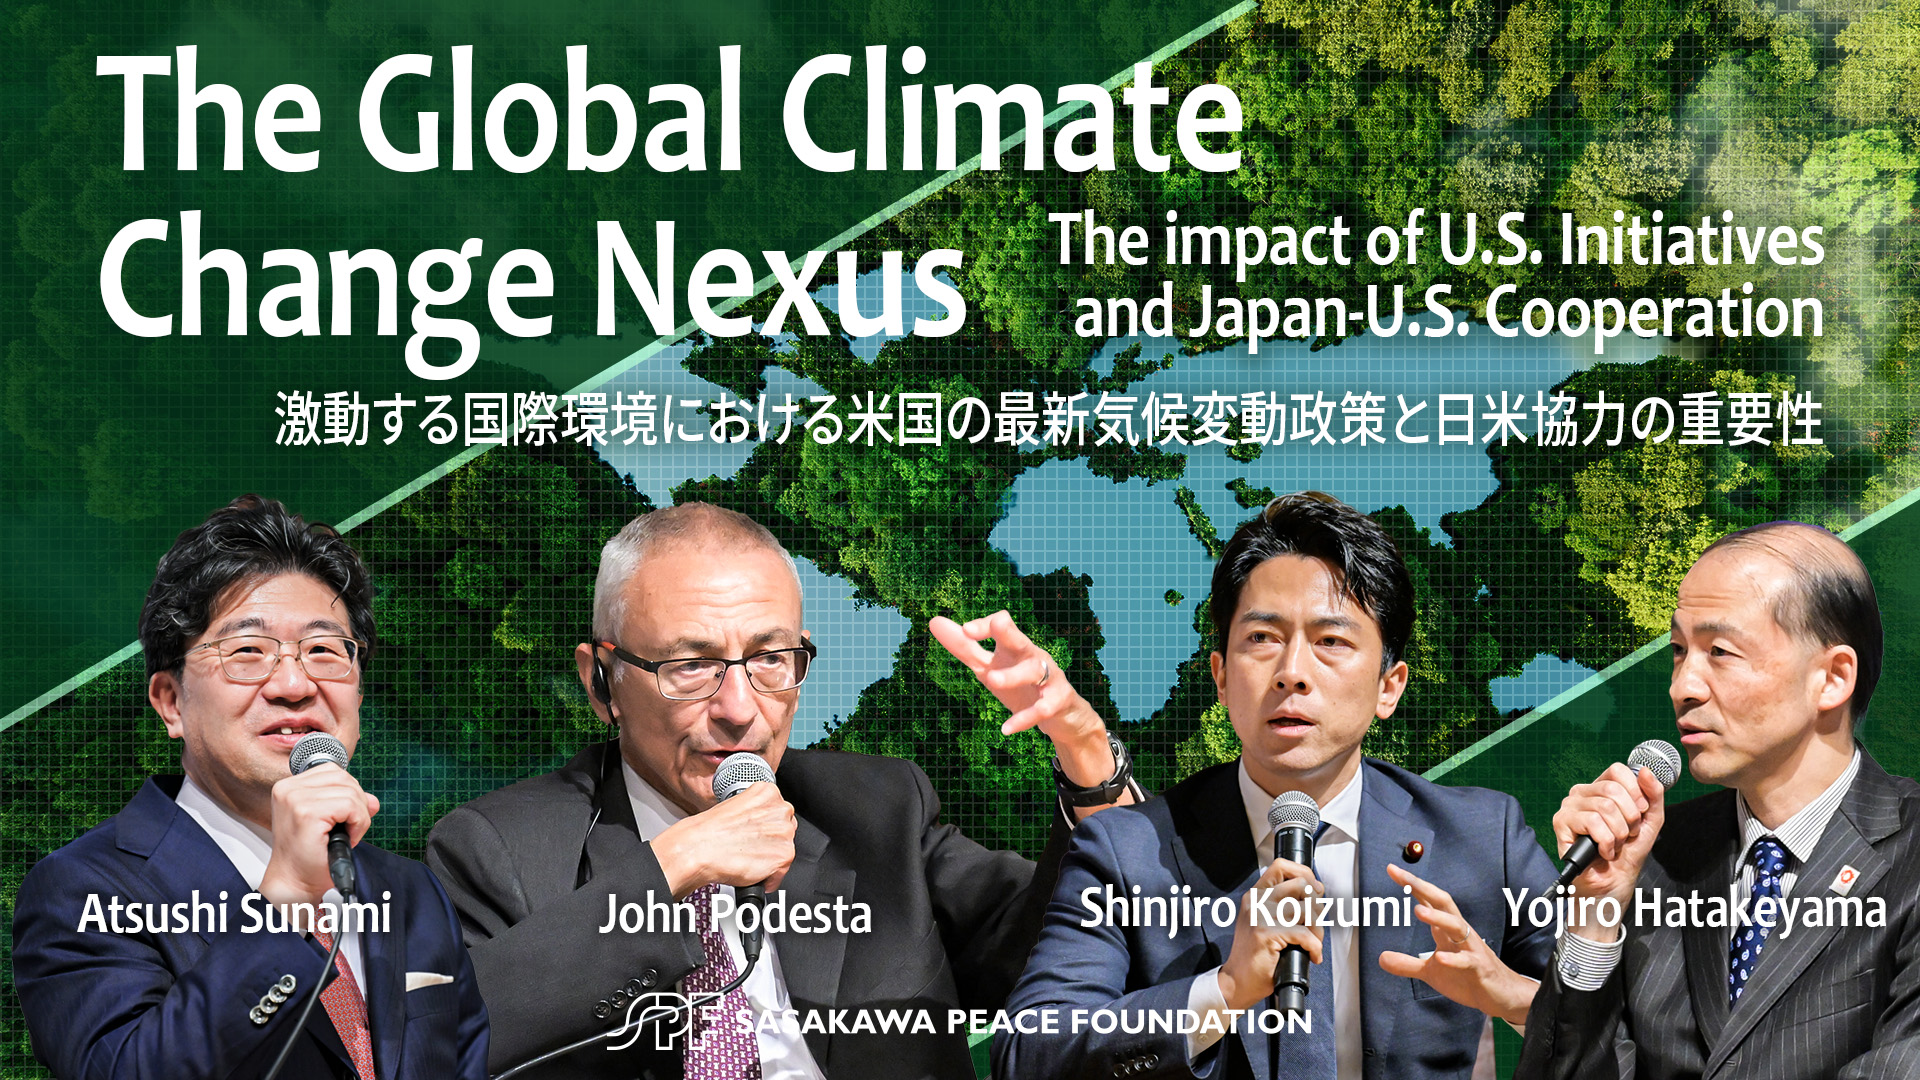 【講演会報告】The Global Climate Change Nexus　激動する国際環境における米国の最新気候変動政策と日米協力の重要性